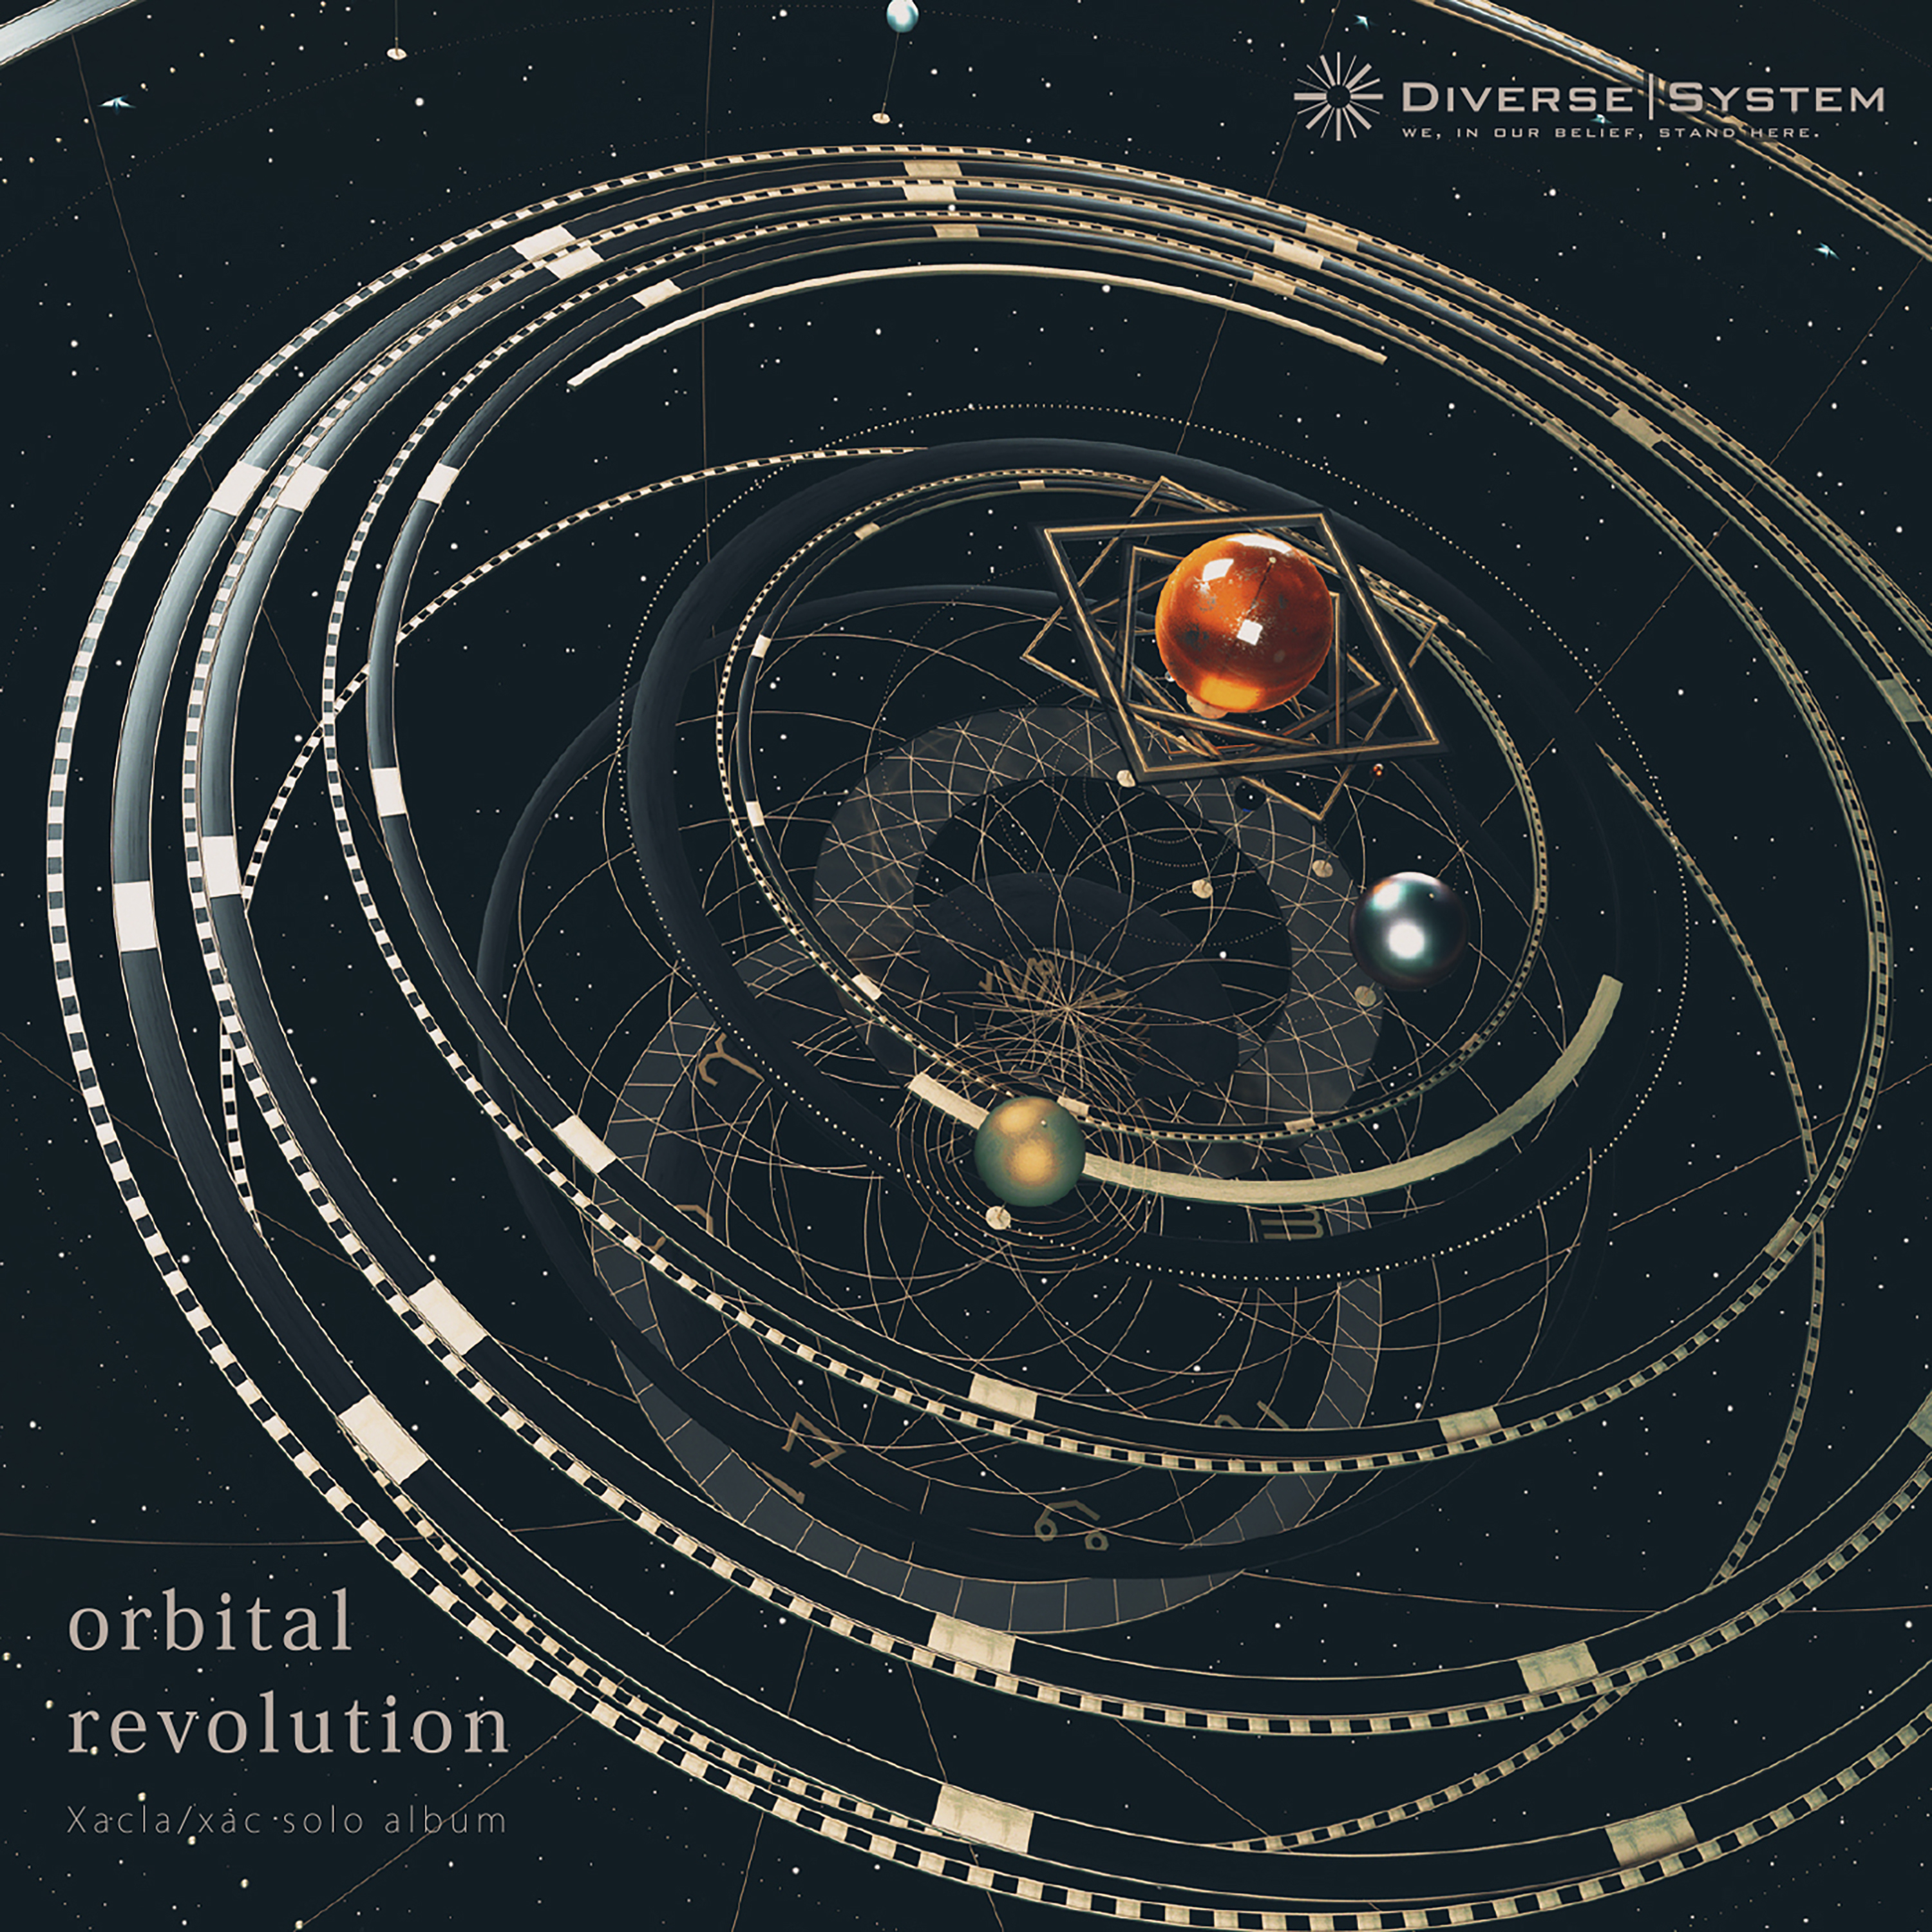 Orbital revolution